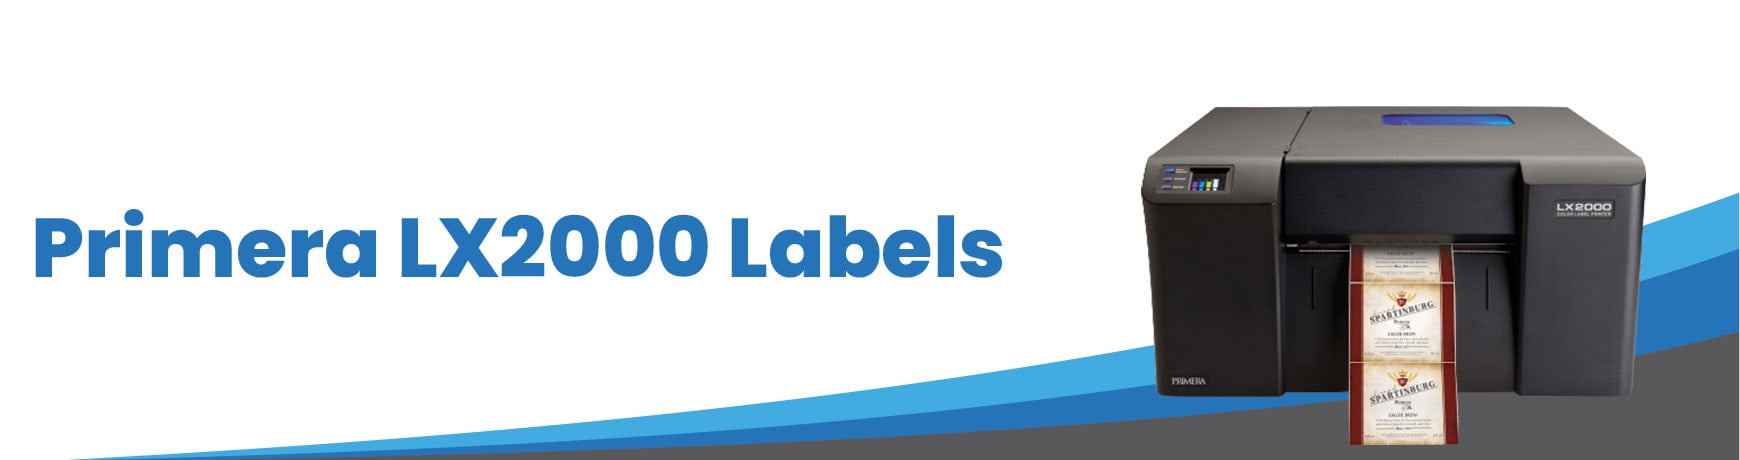 Primera LX2000 Labels